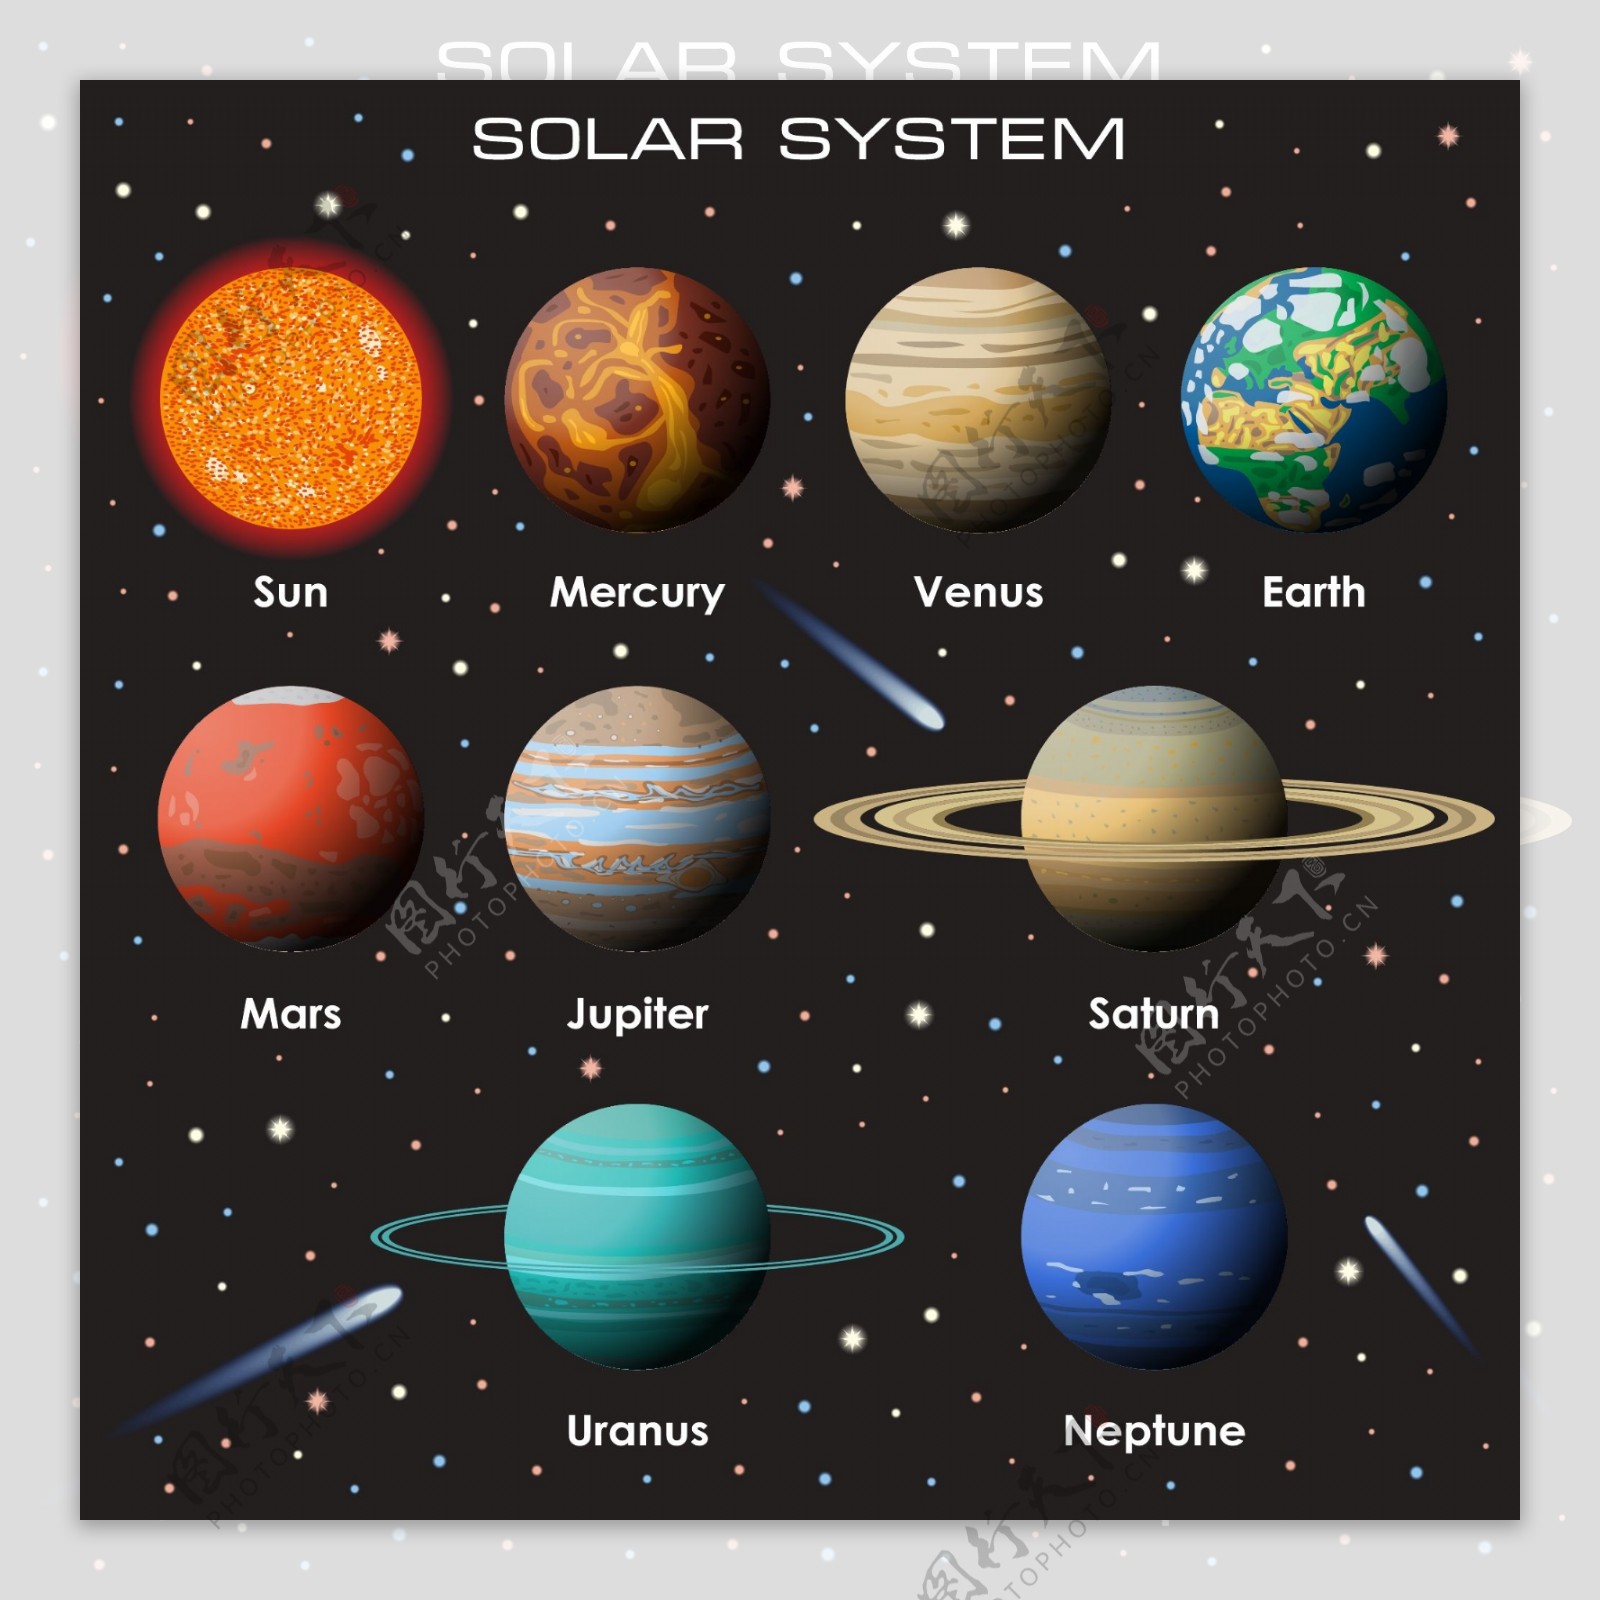 太阳系行星矢量素材